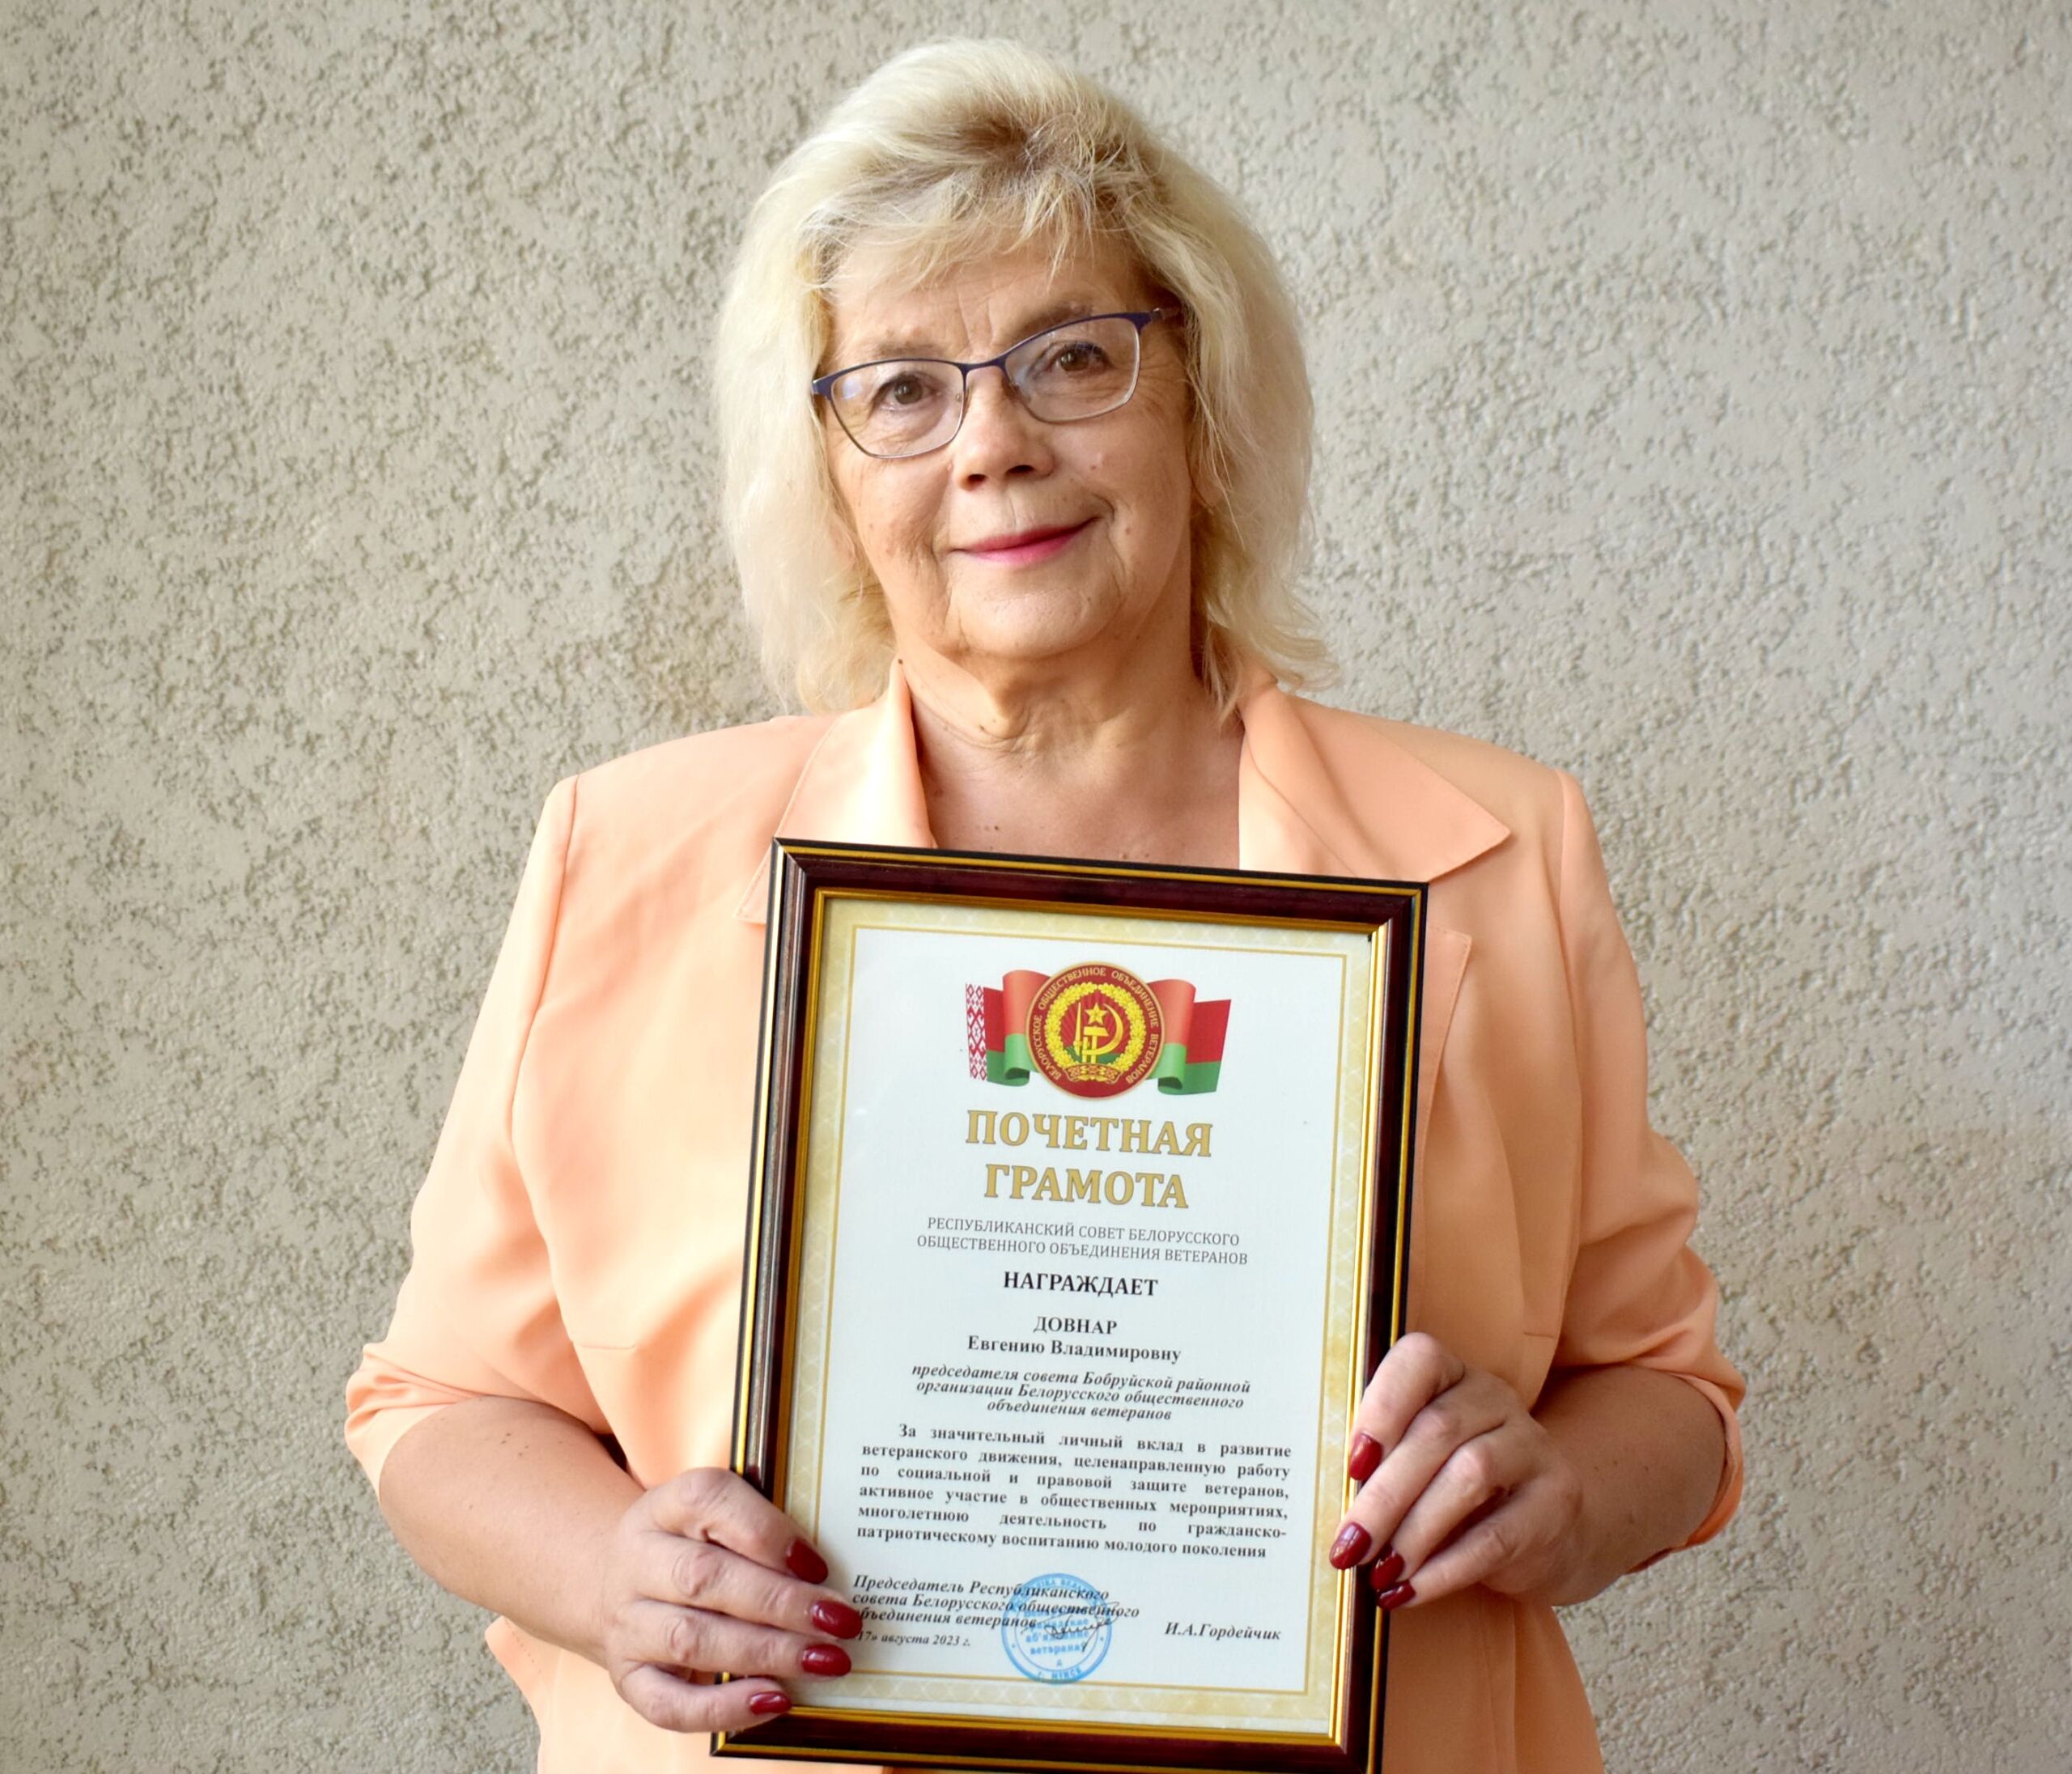 Председатель Бобруйского райсовета ветеранов награждена Почетной грамотой за значительный личный вклад в развитие ветеранского движения